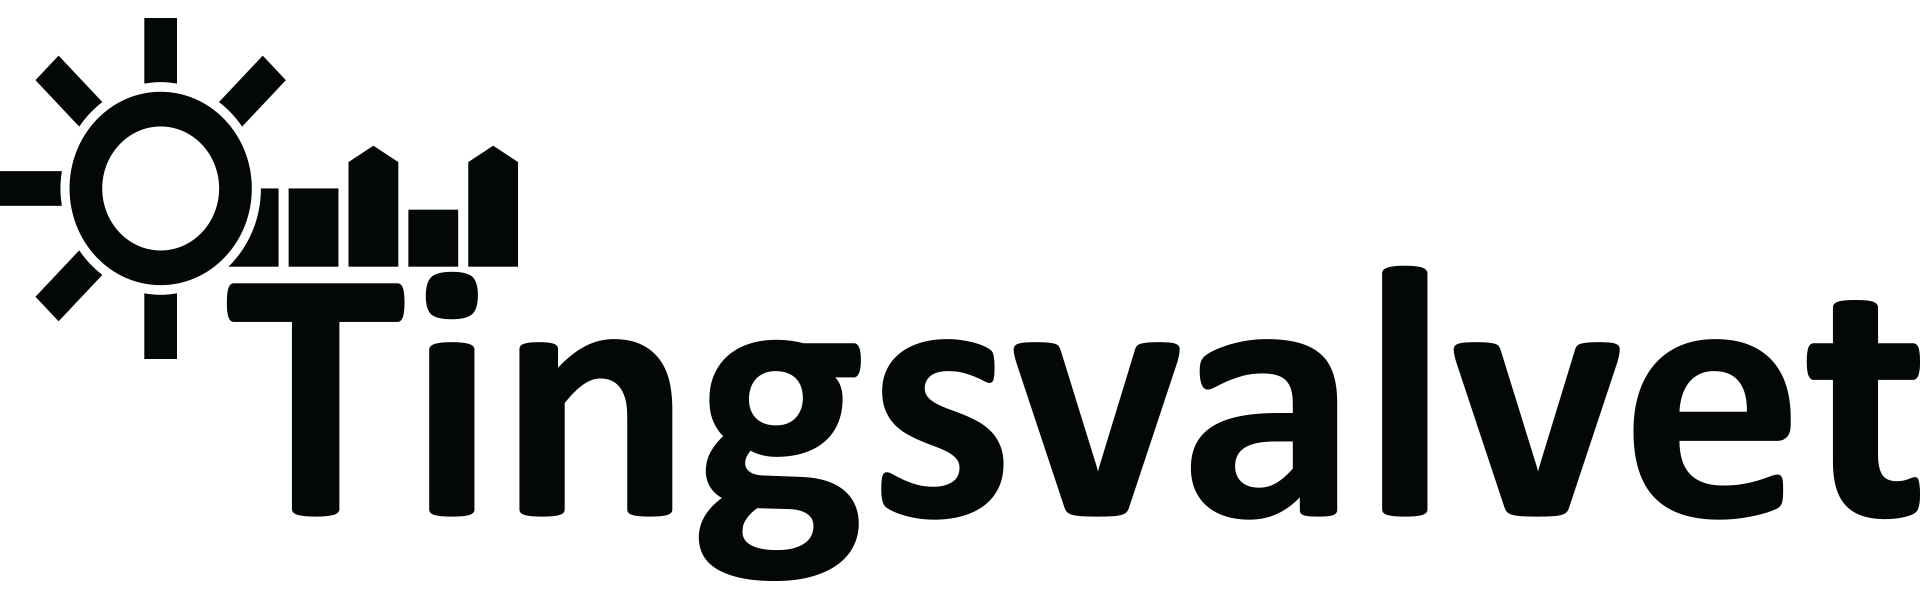 Tingsvalvet Fastighets AB Logo